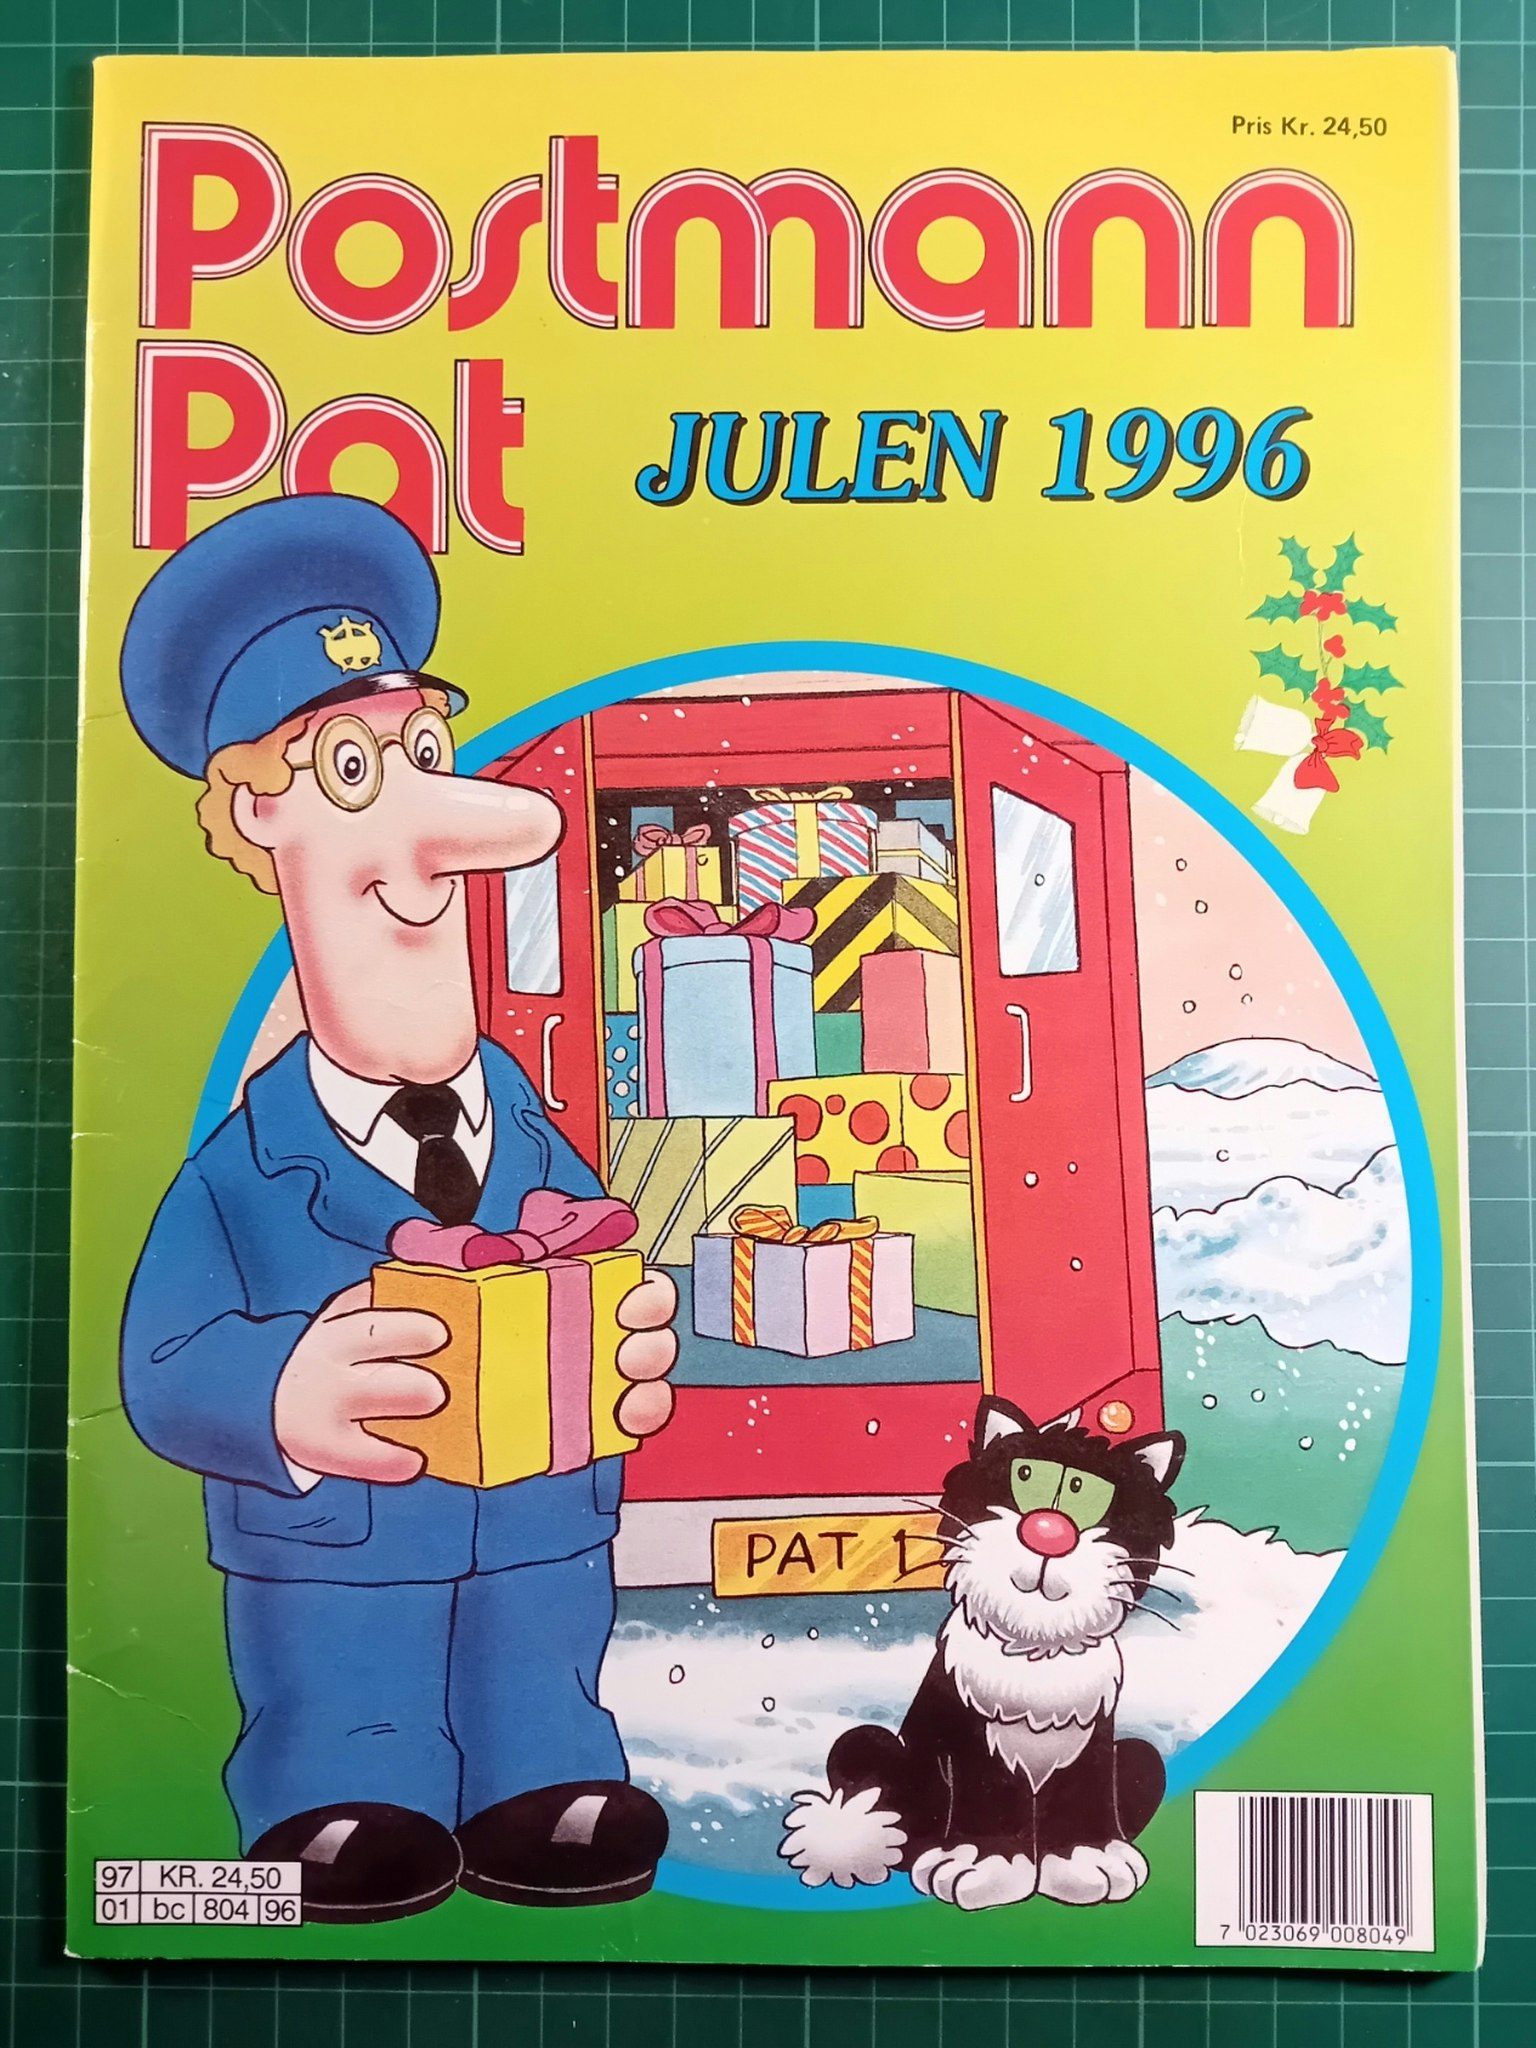 Postmann Pat Julen 1996